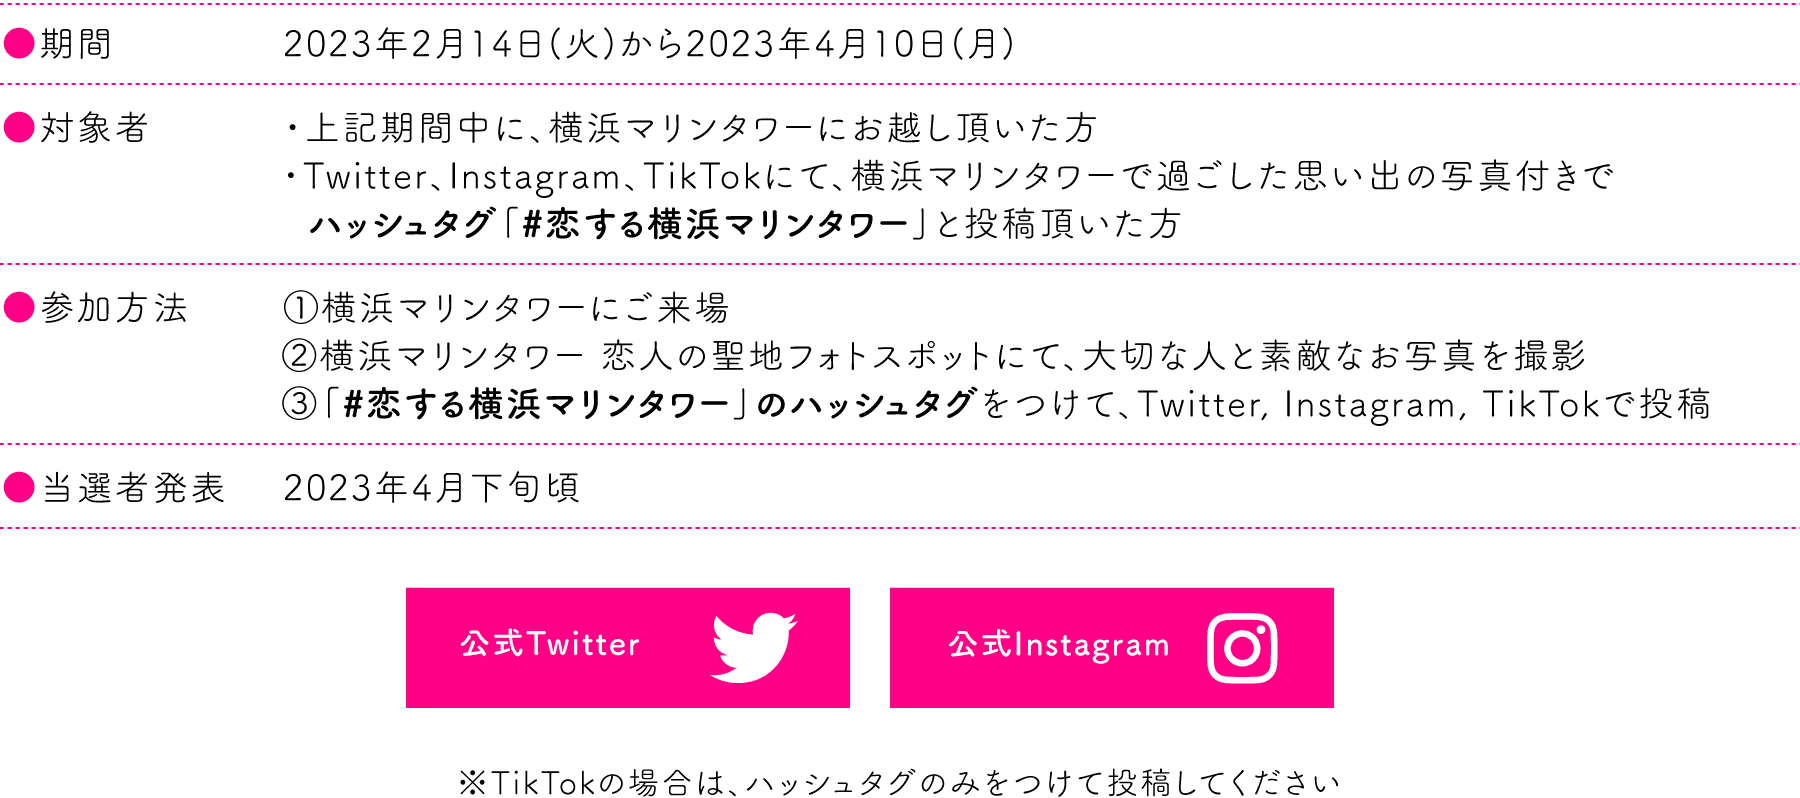 「#恋する横浜マリンタワー」のハッシュタグをつけて、Twitter, Instagram, TikTokで投稿